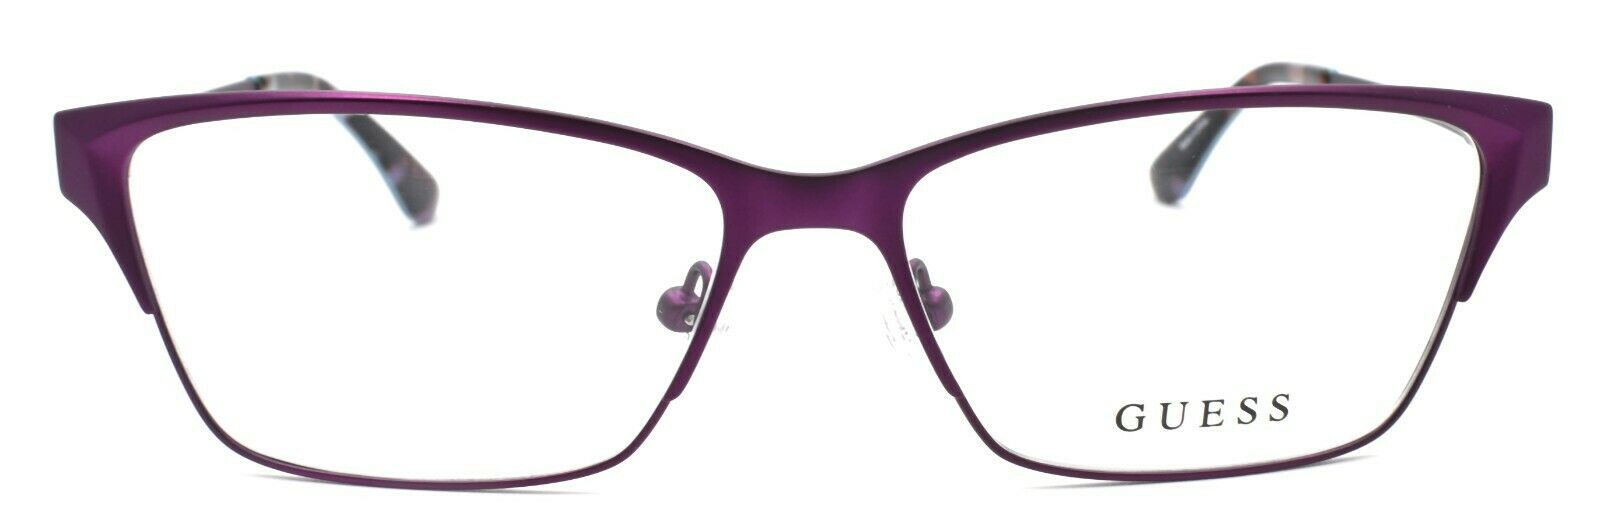 2-GUESS GU2605 082 Women's Eyeglasses Frames 53-14-135 Purple + CASE-664689877058-IKSpecs